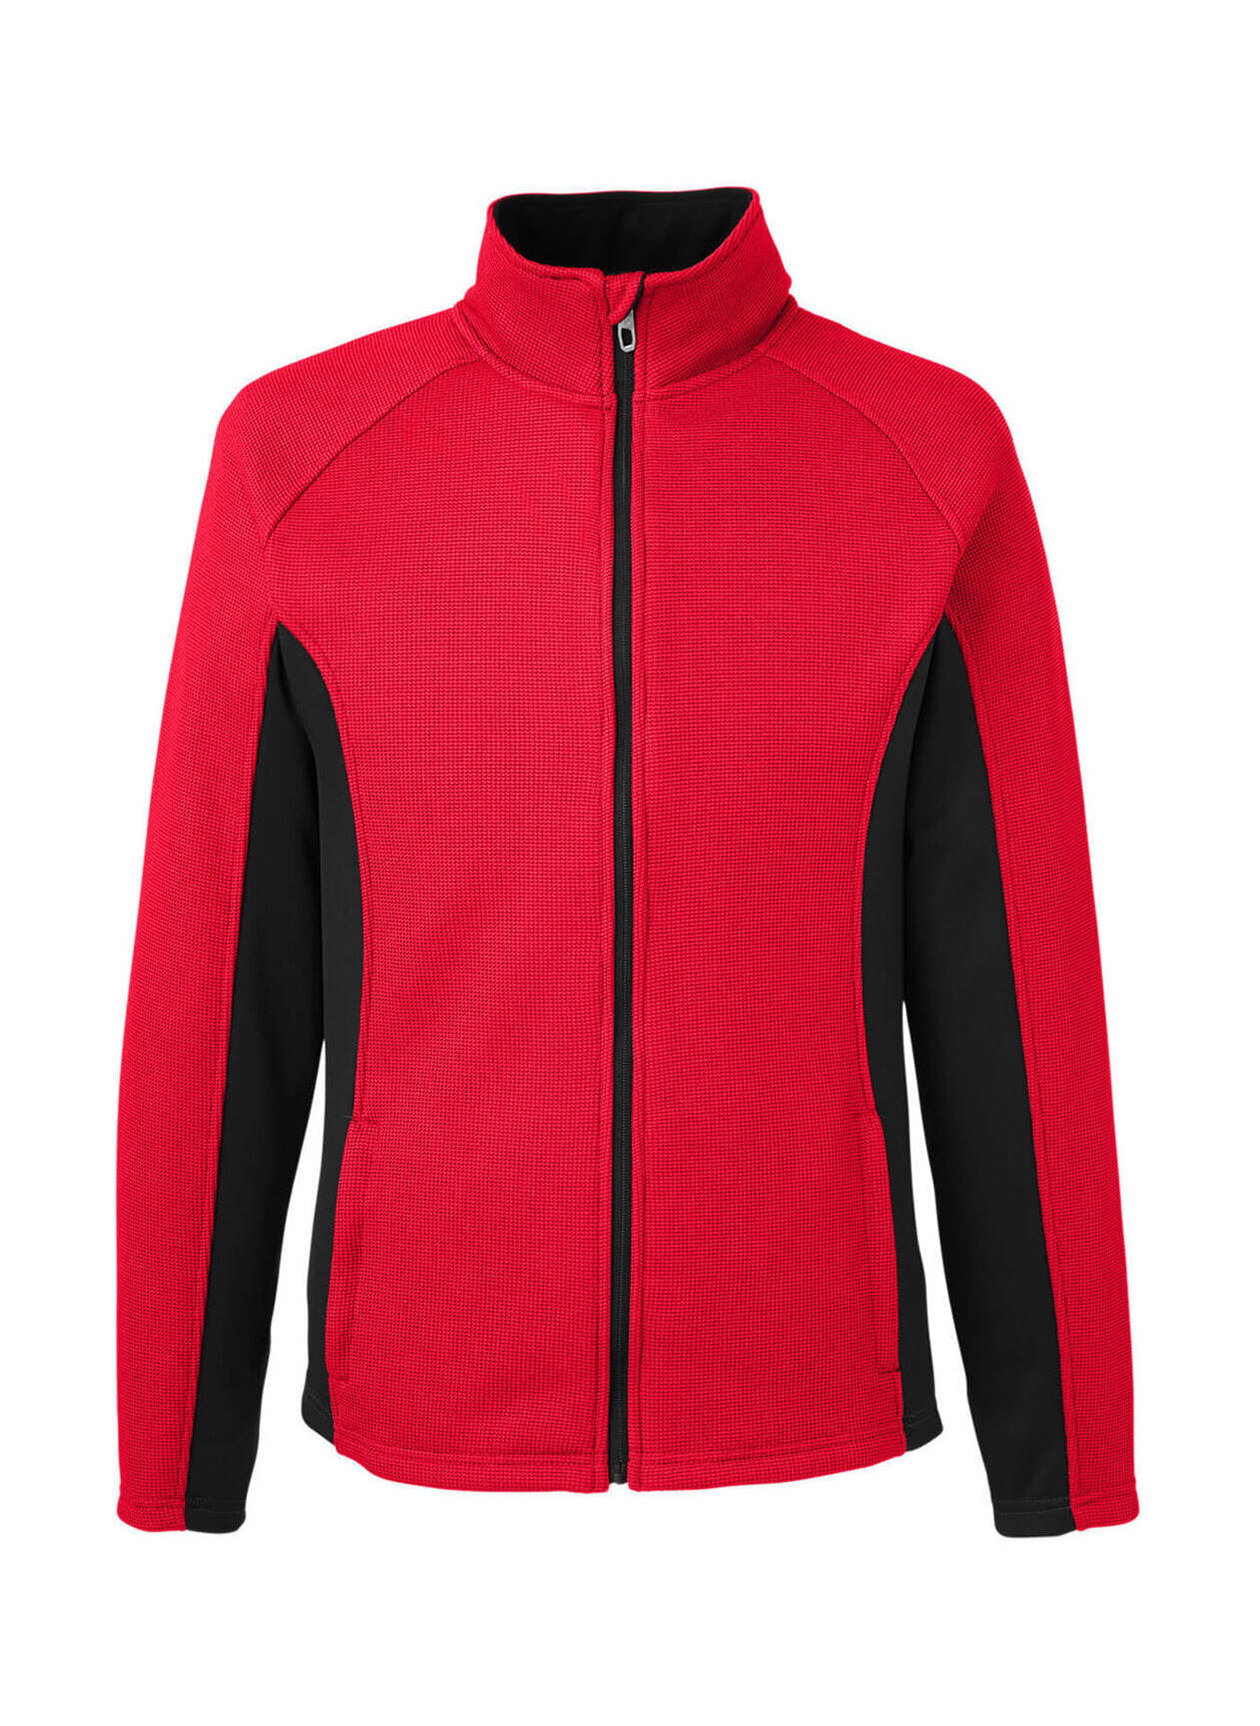 Spyder Men's Red-Black-Red Constant Sweater Fleece Jacket